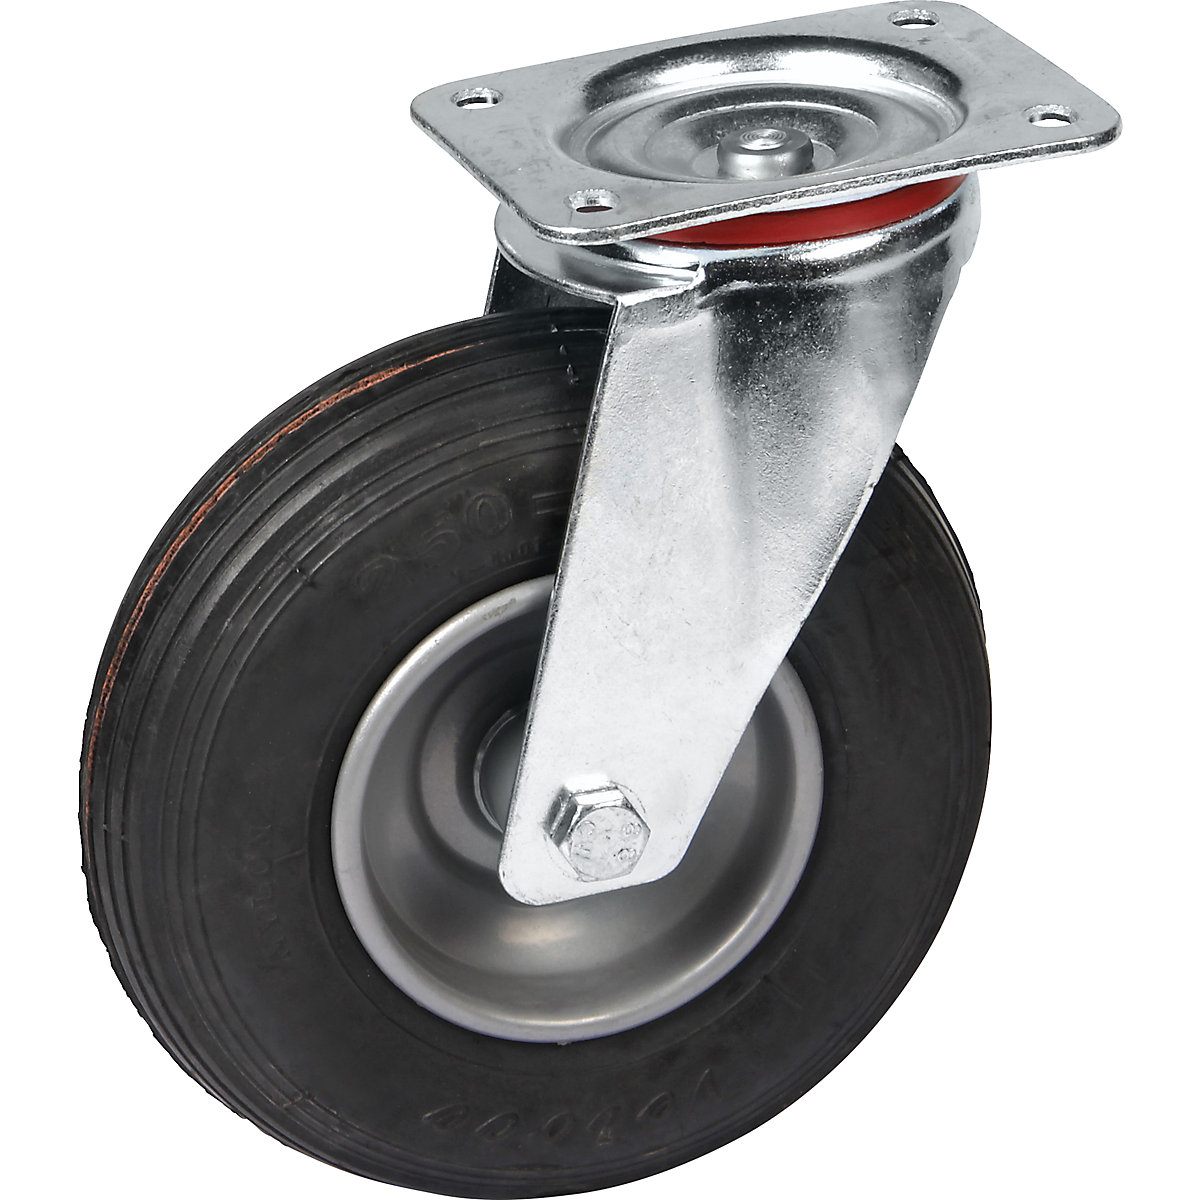 Pneumáticos em jante de chapa de aço, Ø x largura das rodas 200 x 50 mm, roda orientável, com rolamento de rolos-3